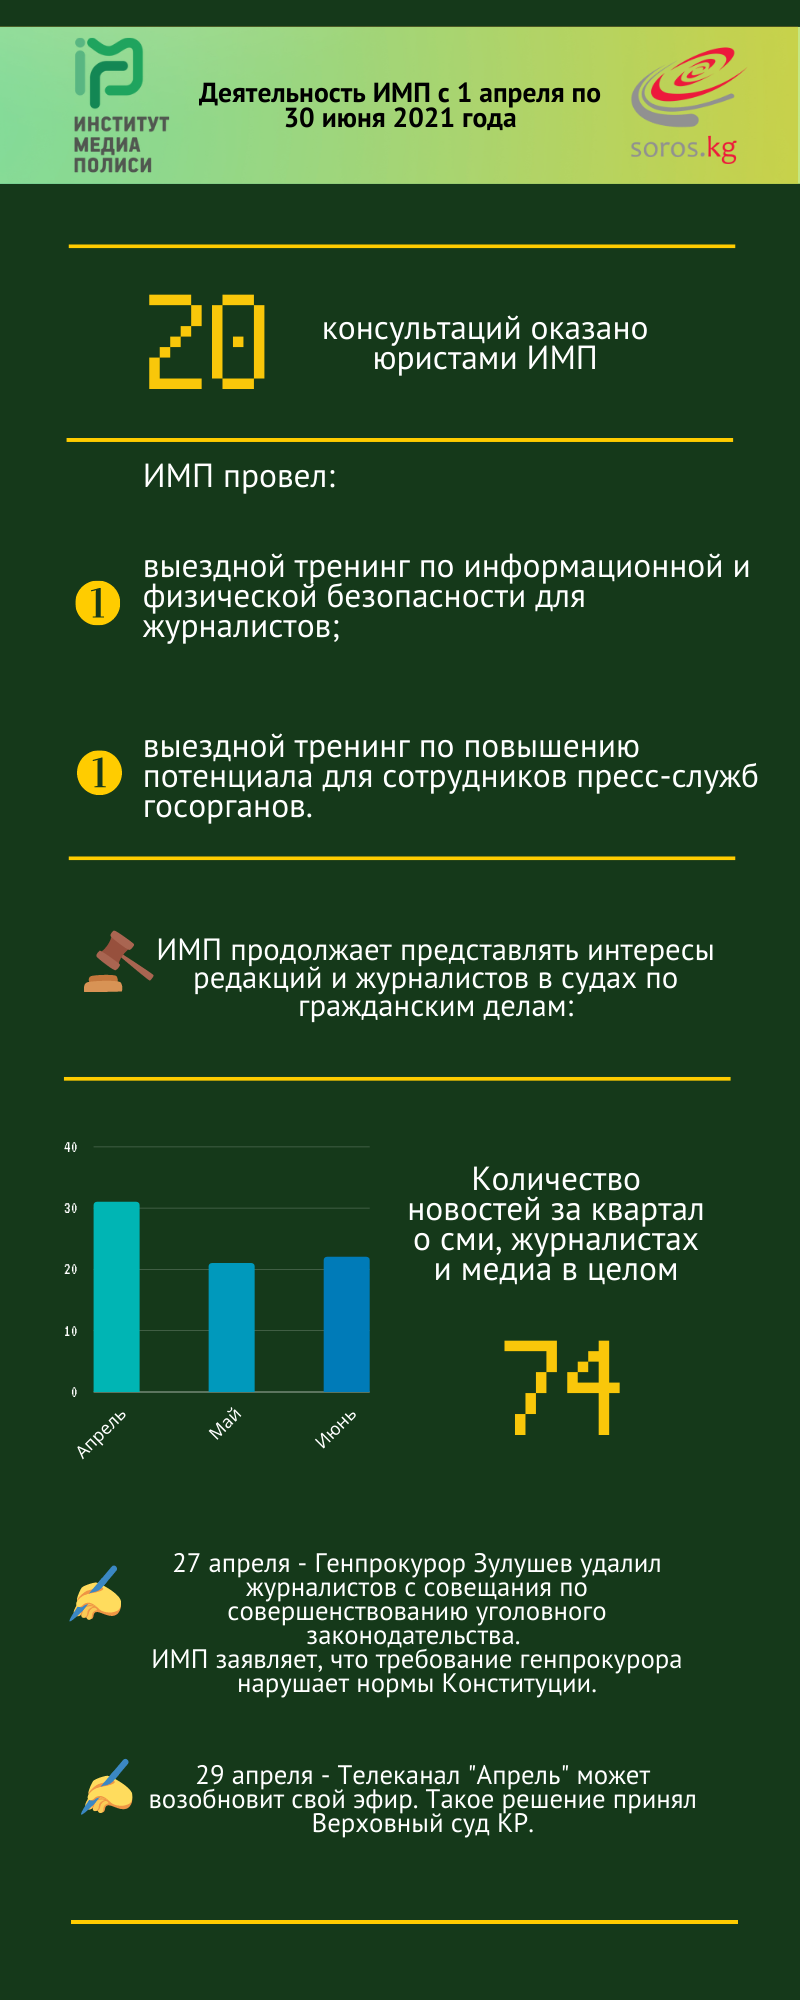 Деятельность Института Медиа Полиси в инфографике